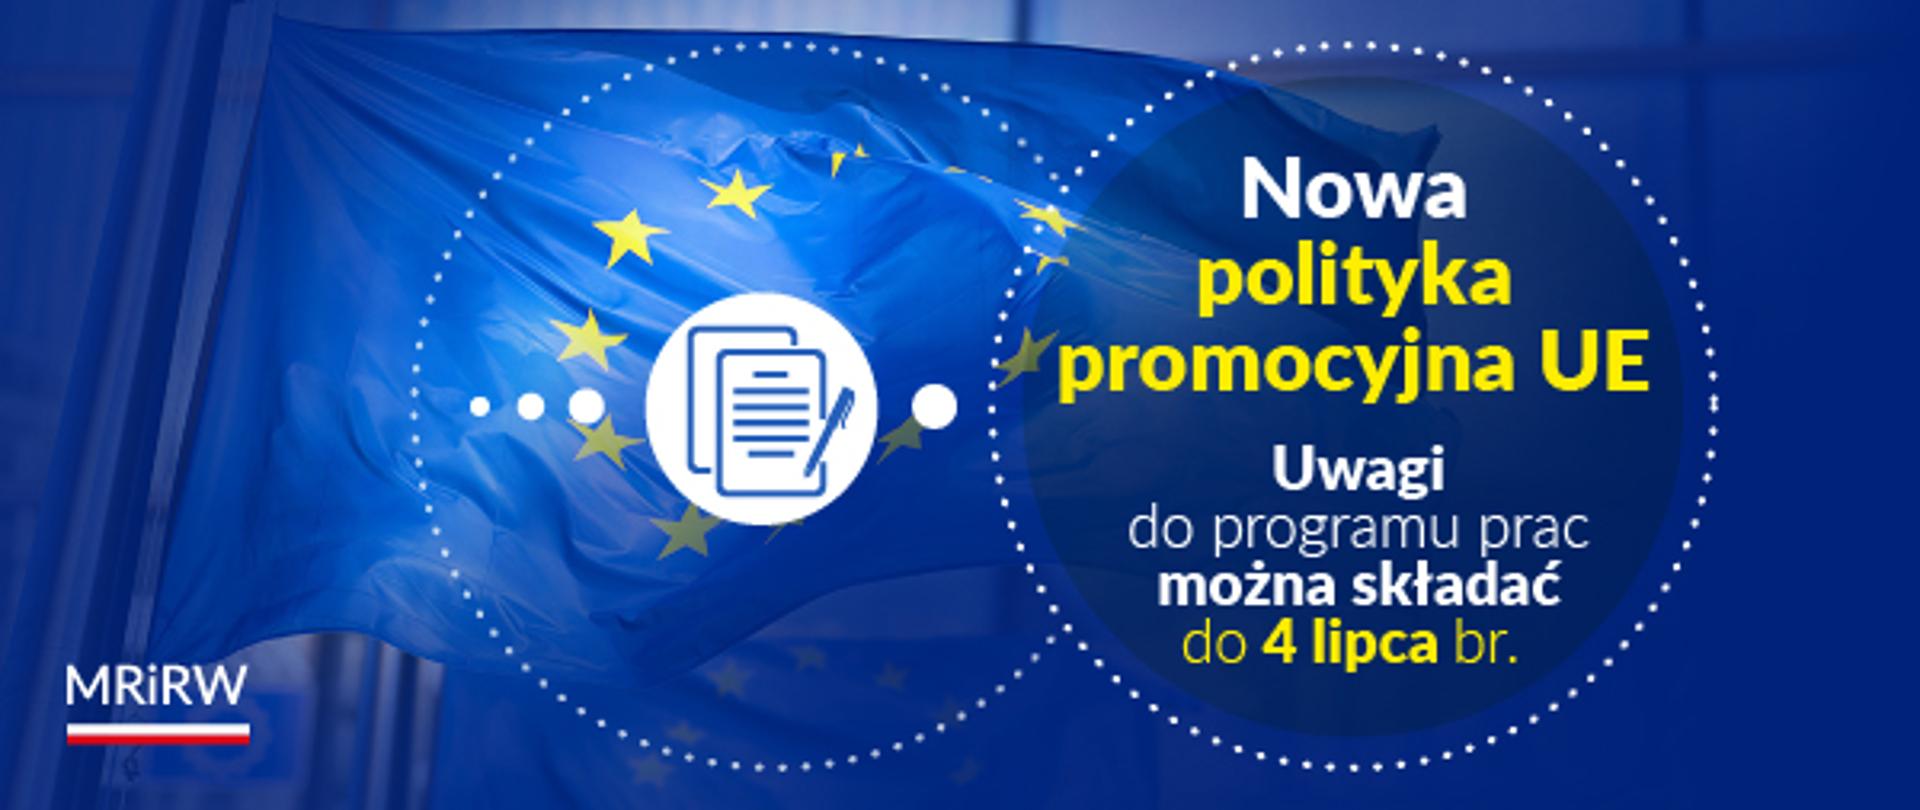 Nowa polityka promocyjna Unii Europejskiej – możliwość zgłaszania uwag